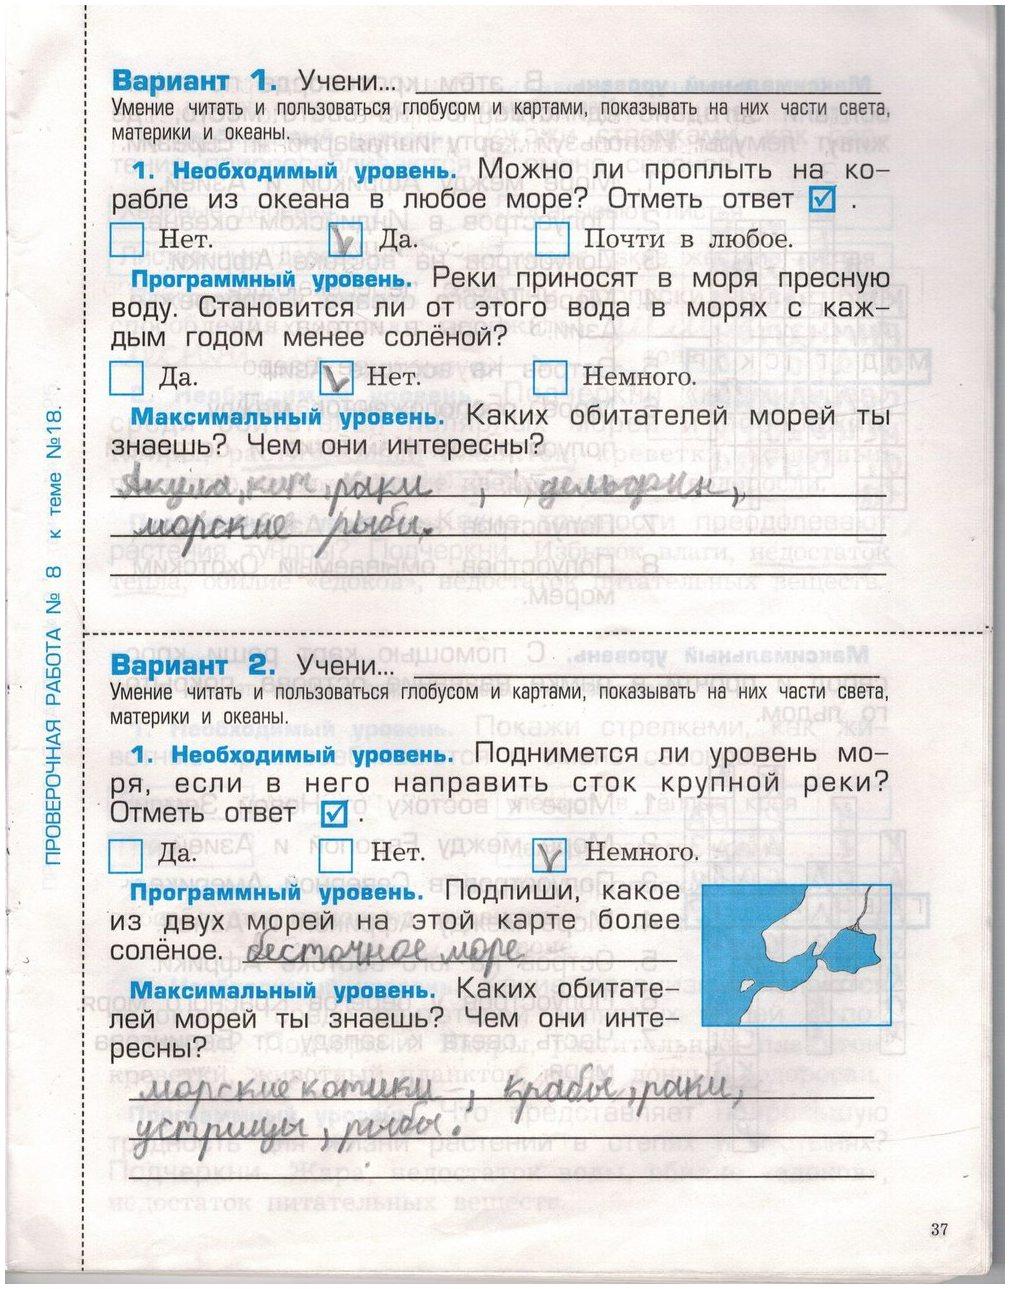 гдз 2 класс проверочные и контрольные работы страница 37 окружающий мир Вахрушев, Бурский, Родыгина